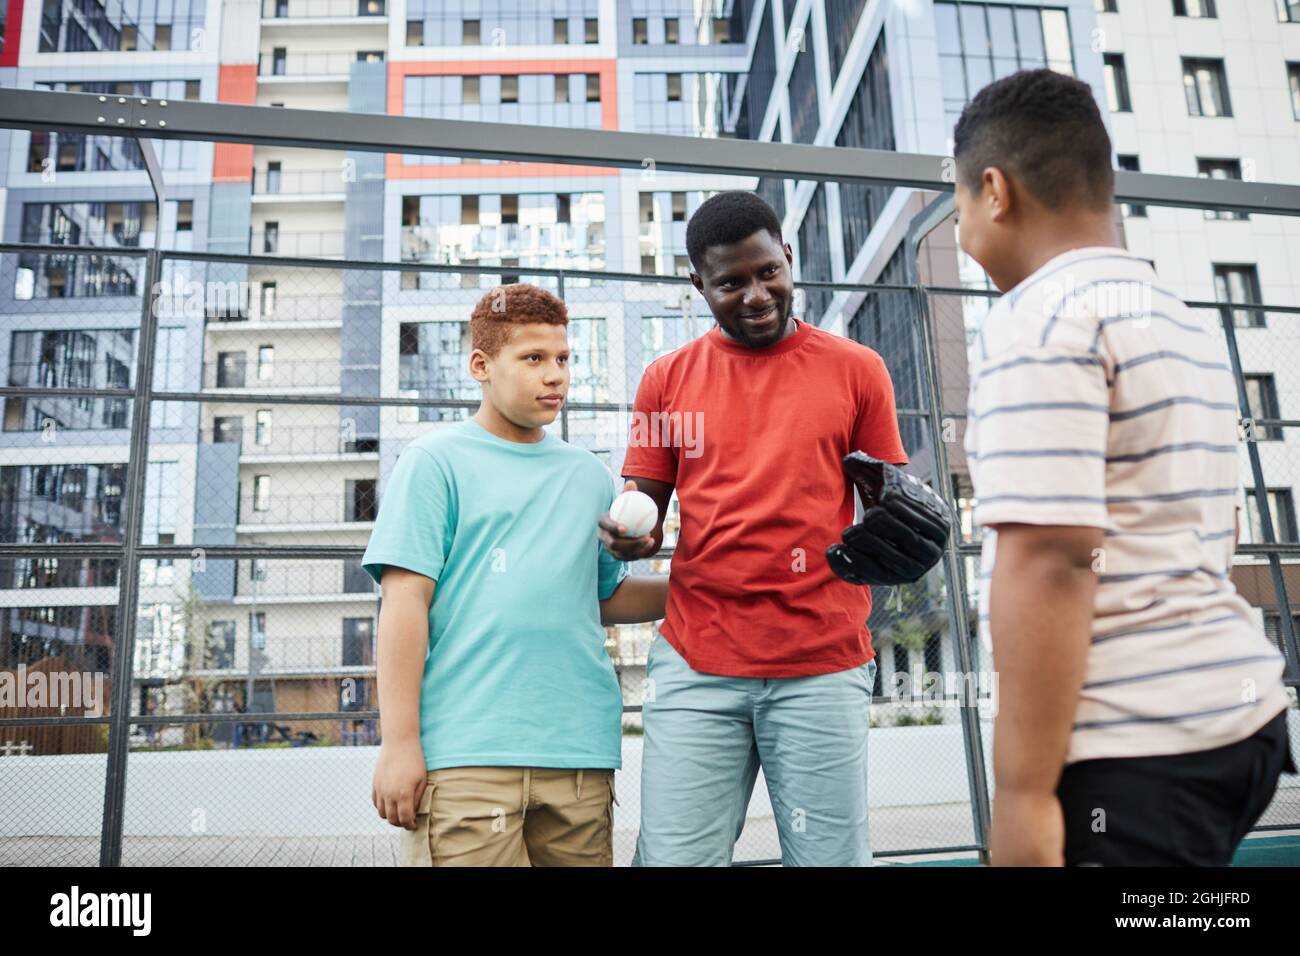 Inhalt African-American Coach in Handschuhen hält den Ball und erklärt Spielregeln, während er Jungen auf das Baseballspiel vorbereitet Stockfoto